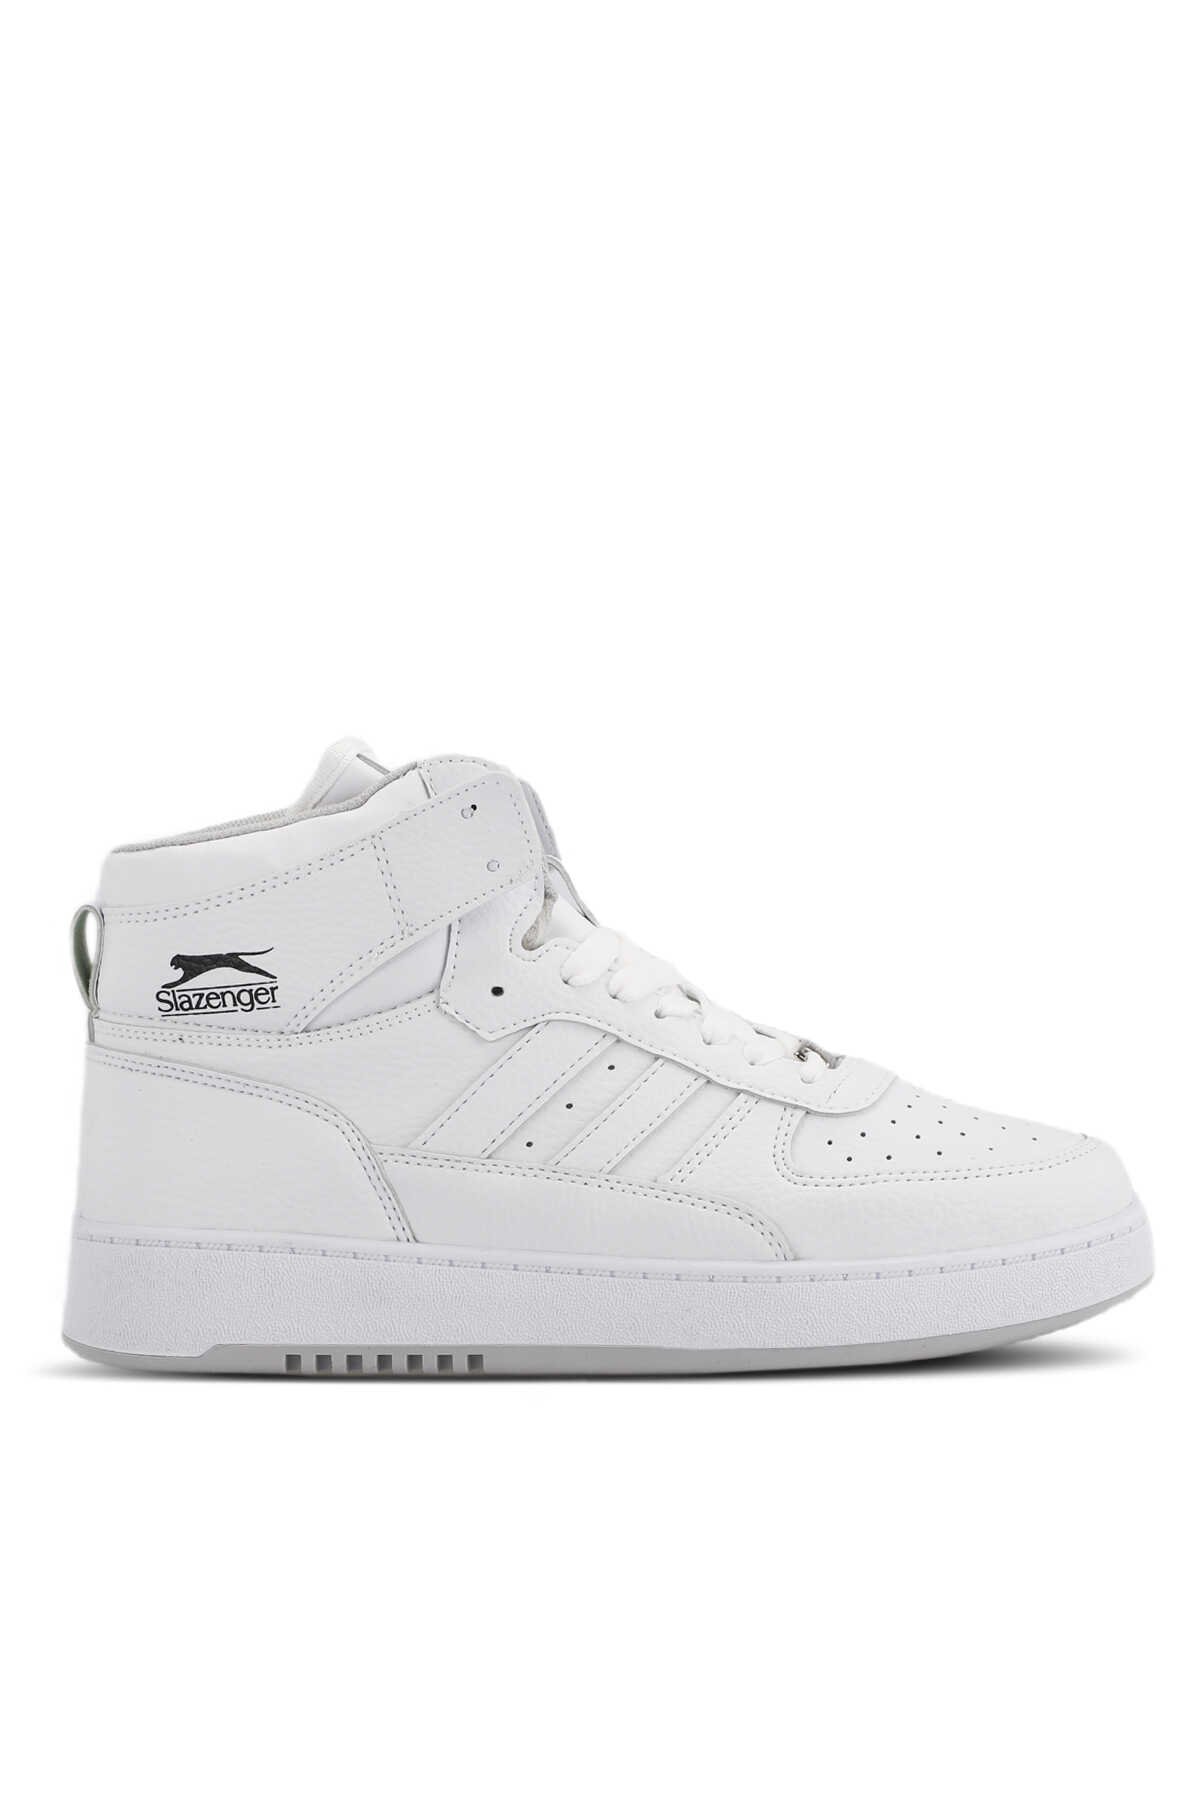 Slazenger - Slazenger DAPHNE HIGH Sneaker Erkek Ayakkabı Beyaz